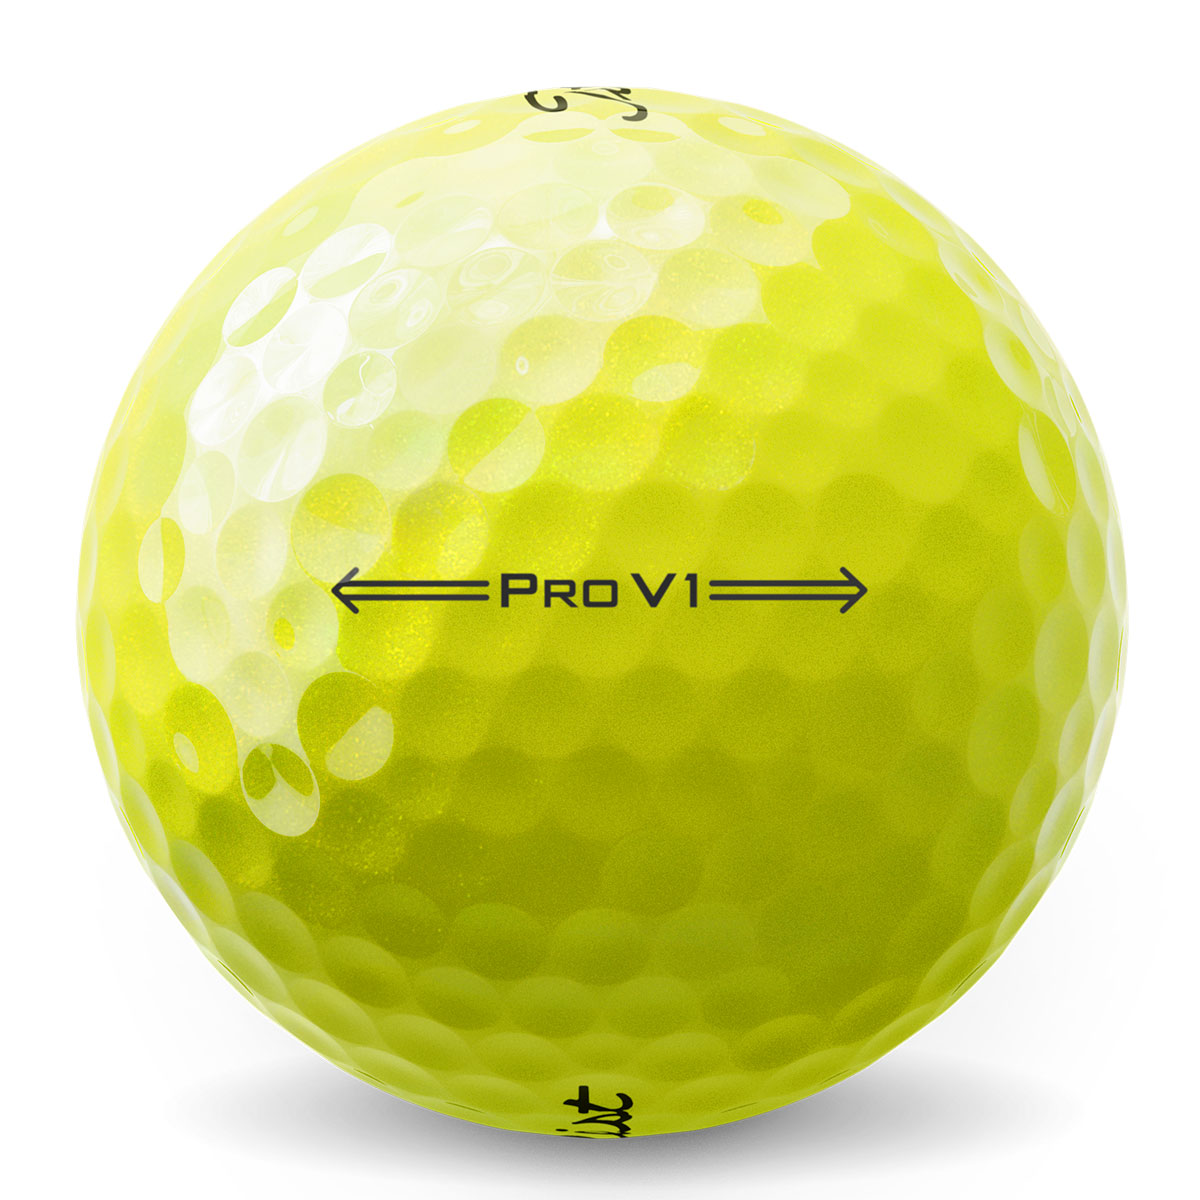 Get Titleist Pro V1 Golf Balls